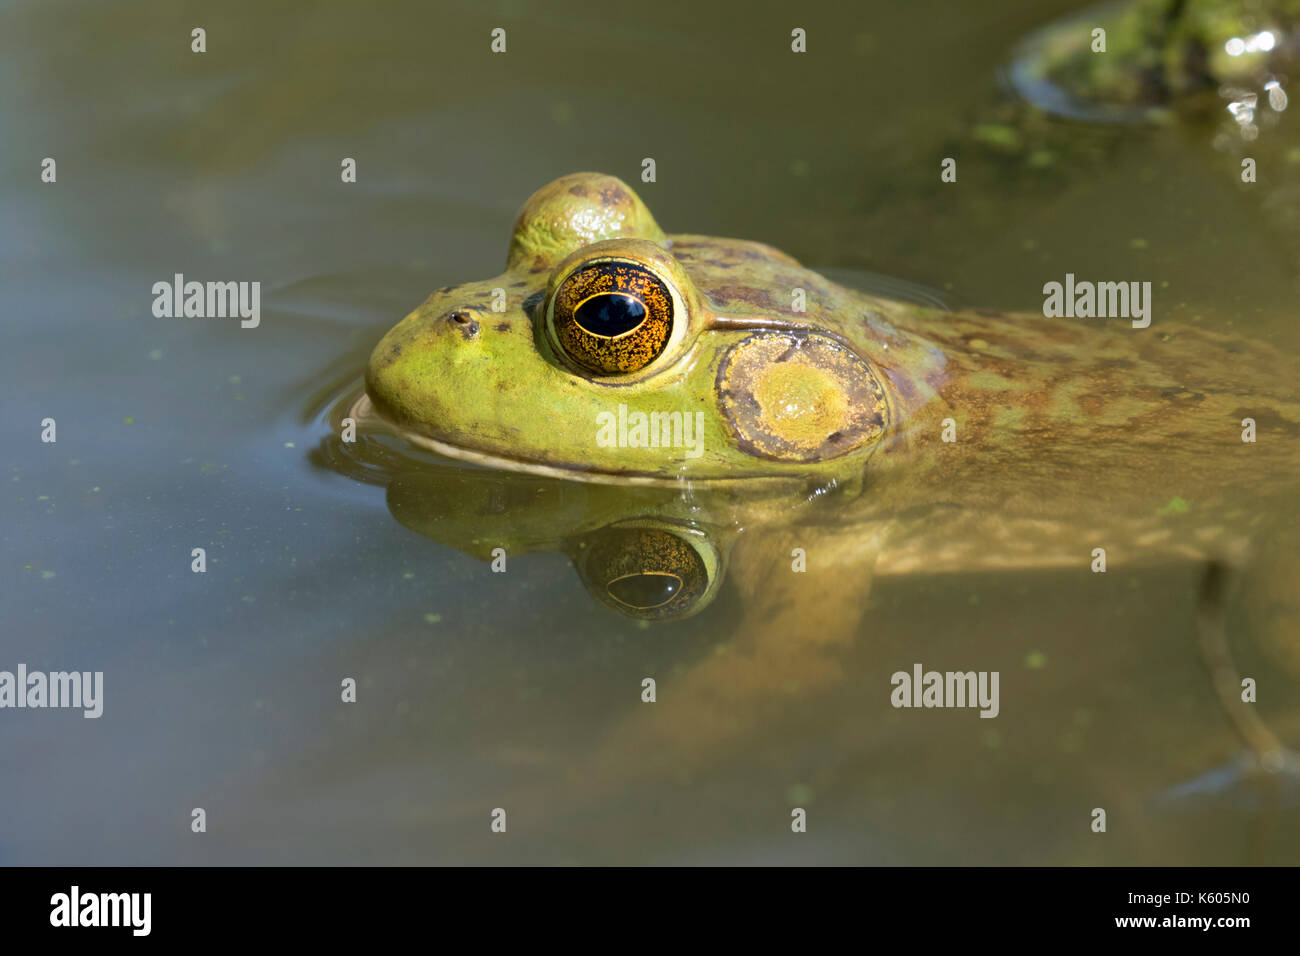 American billfrog (Lithobates catesbeianus) immerso in acqua in una foresta lago, Ames, Iowa, USA Foto Stock